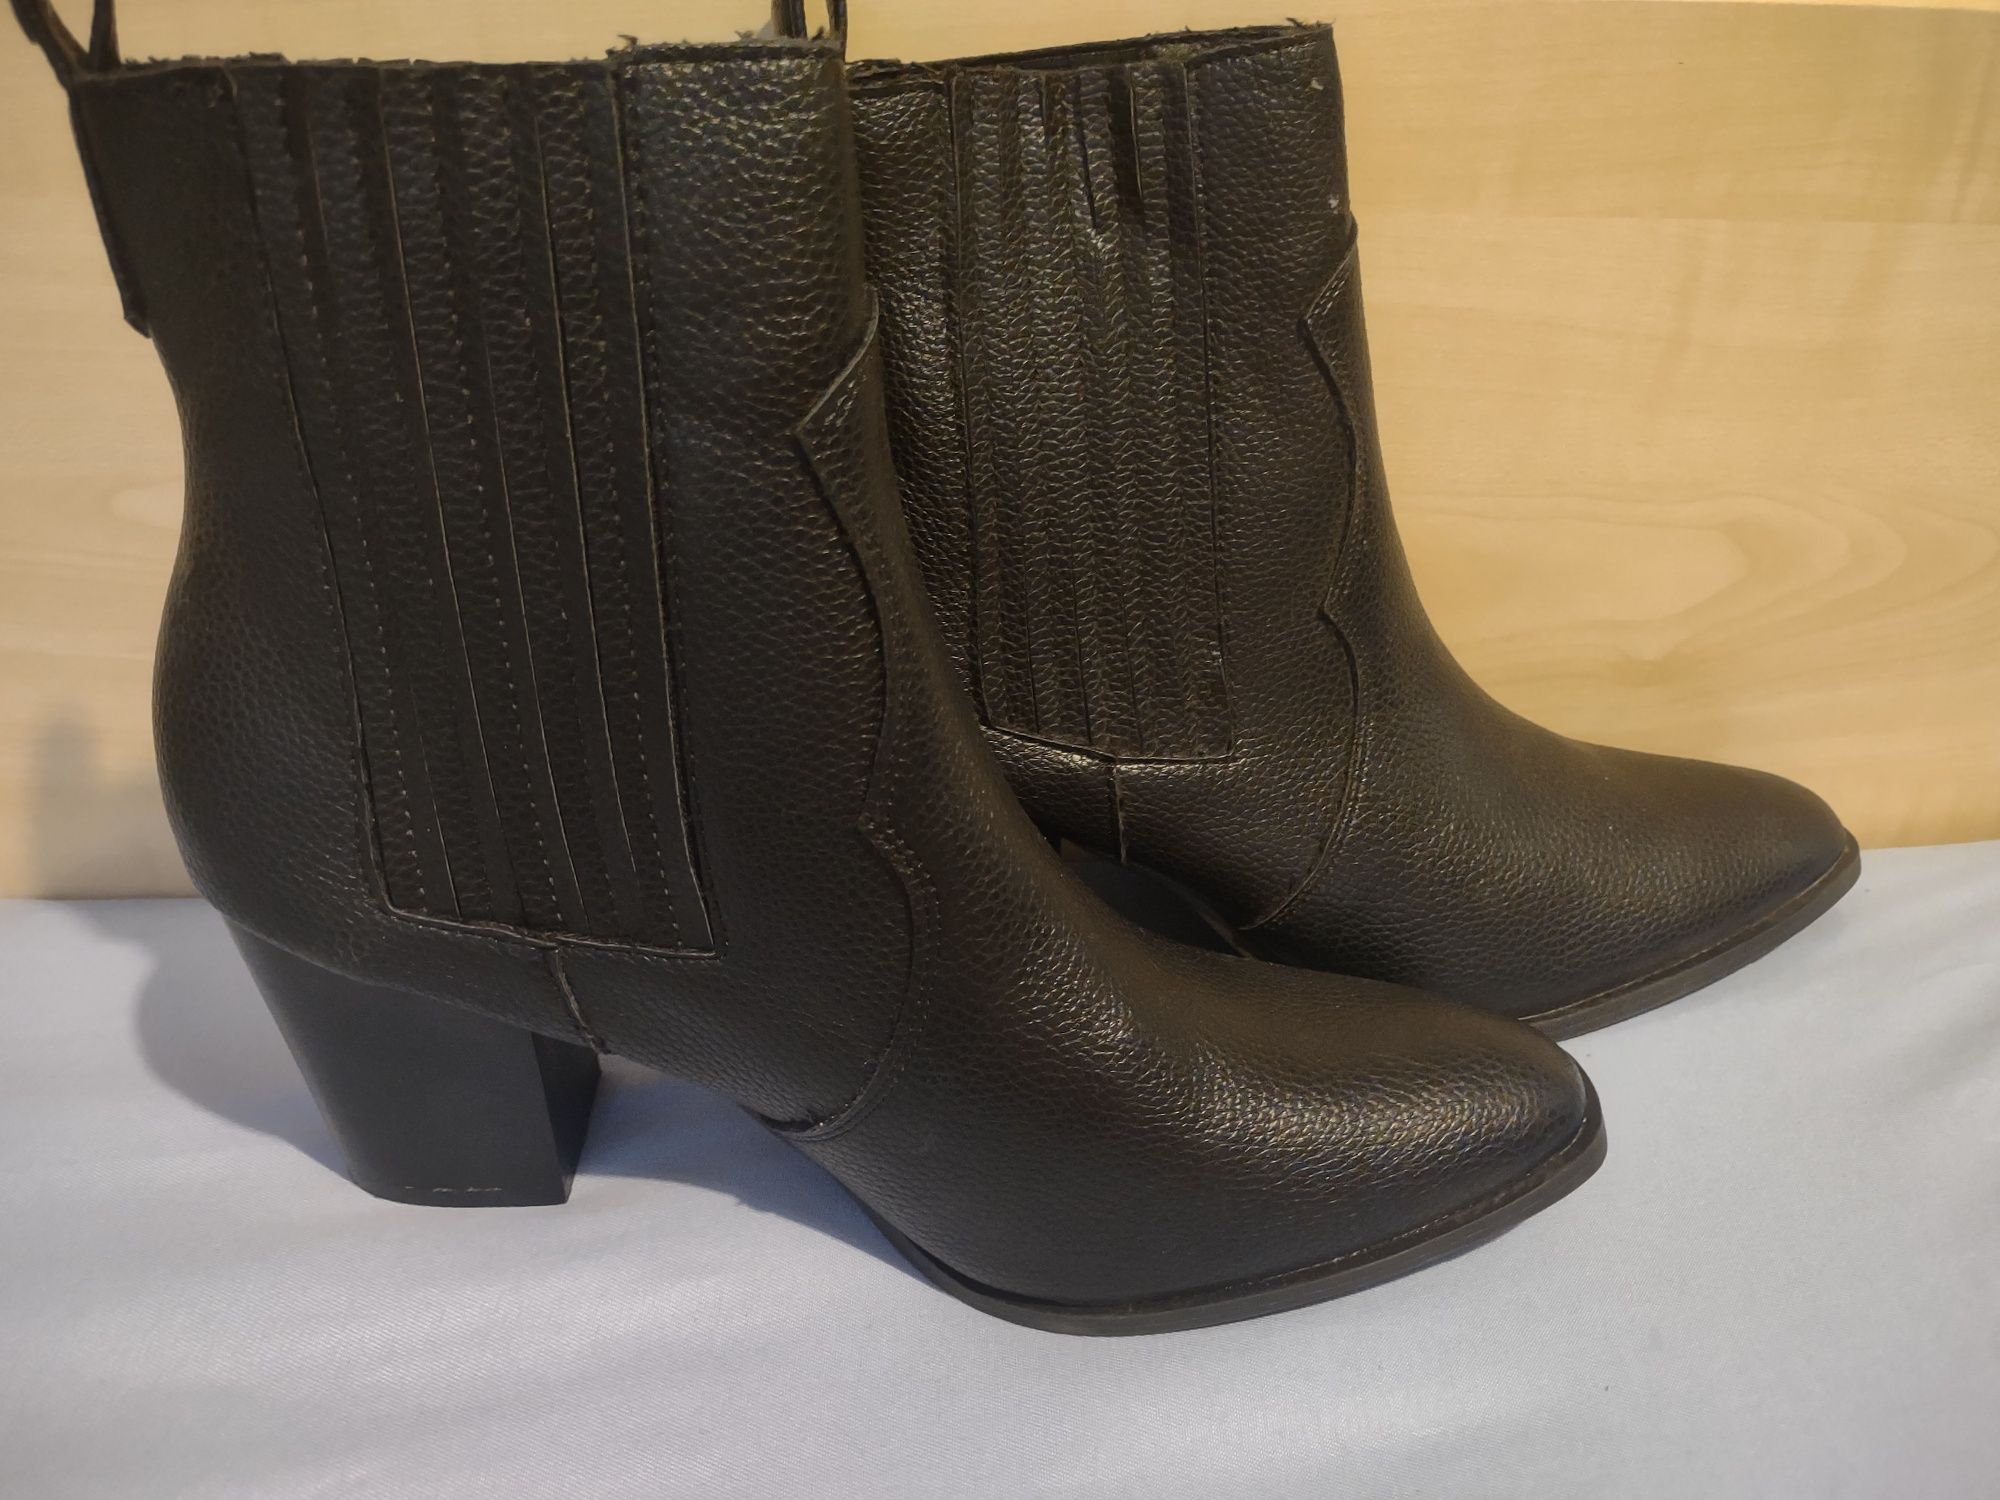 Czarne damskie buty kozaki botki rozmiar 40  nowe na zimę